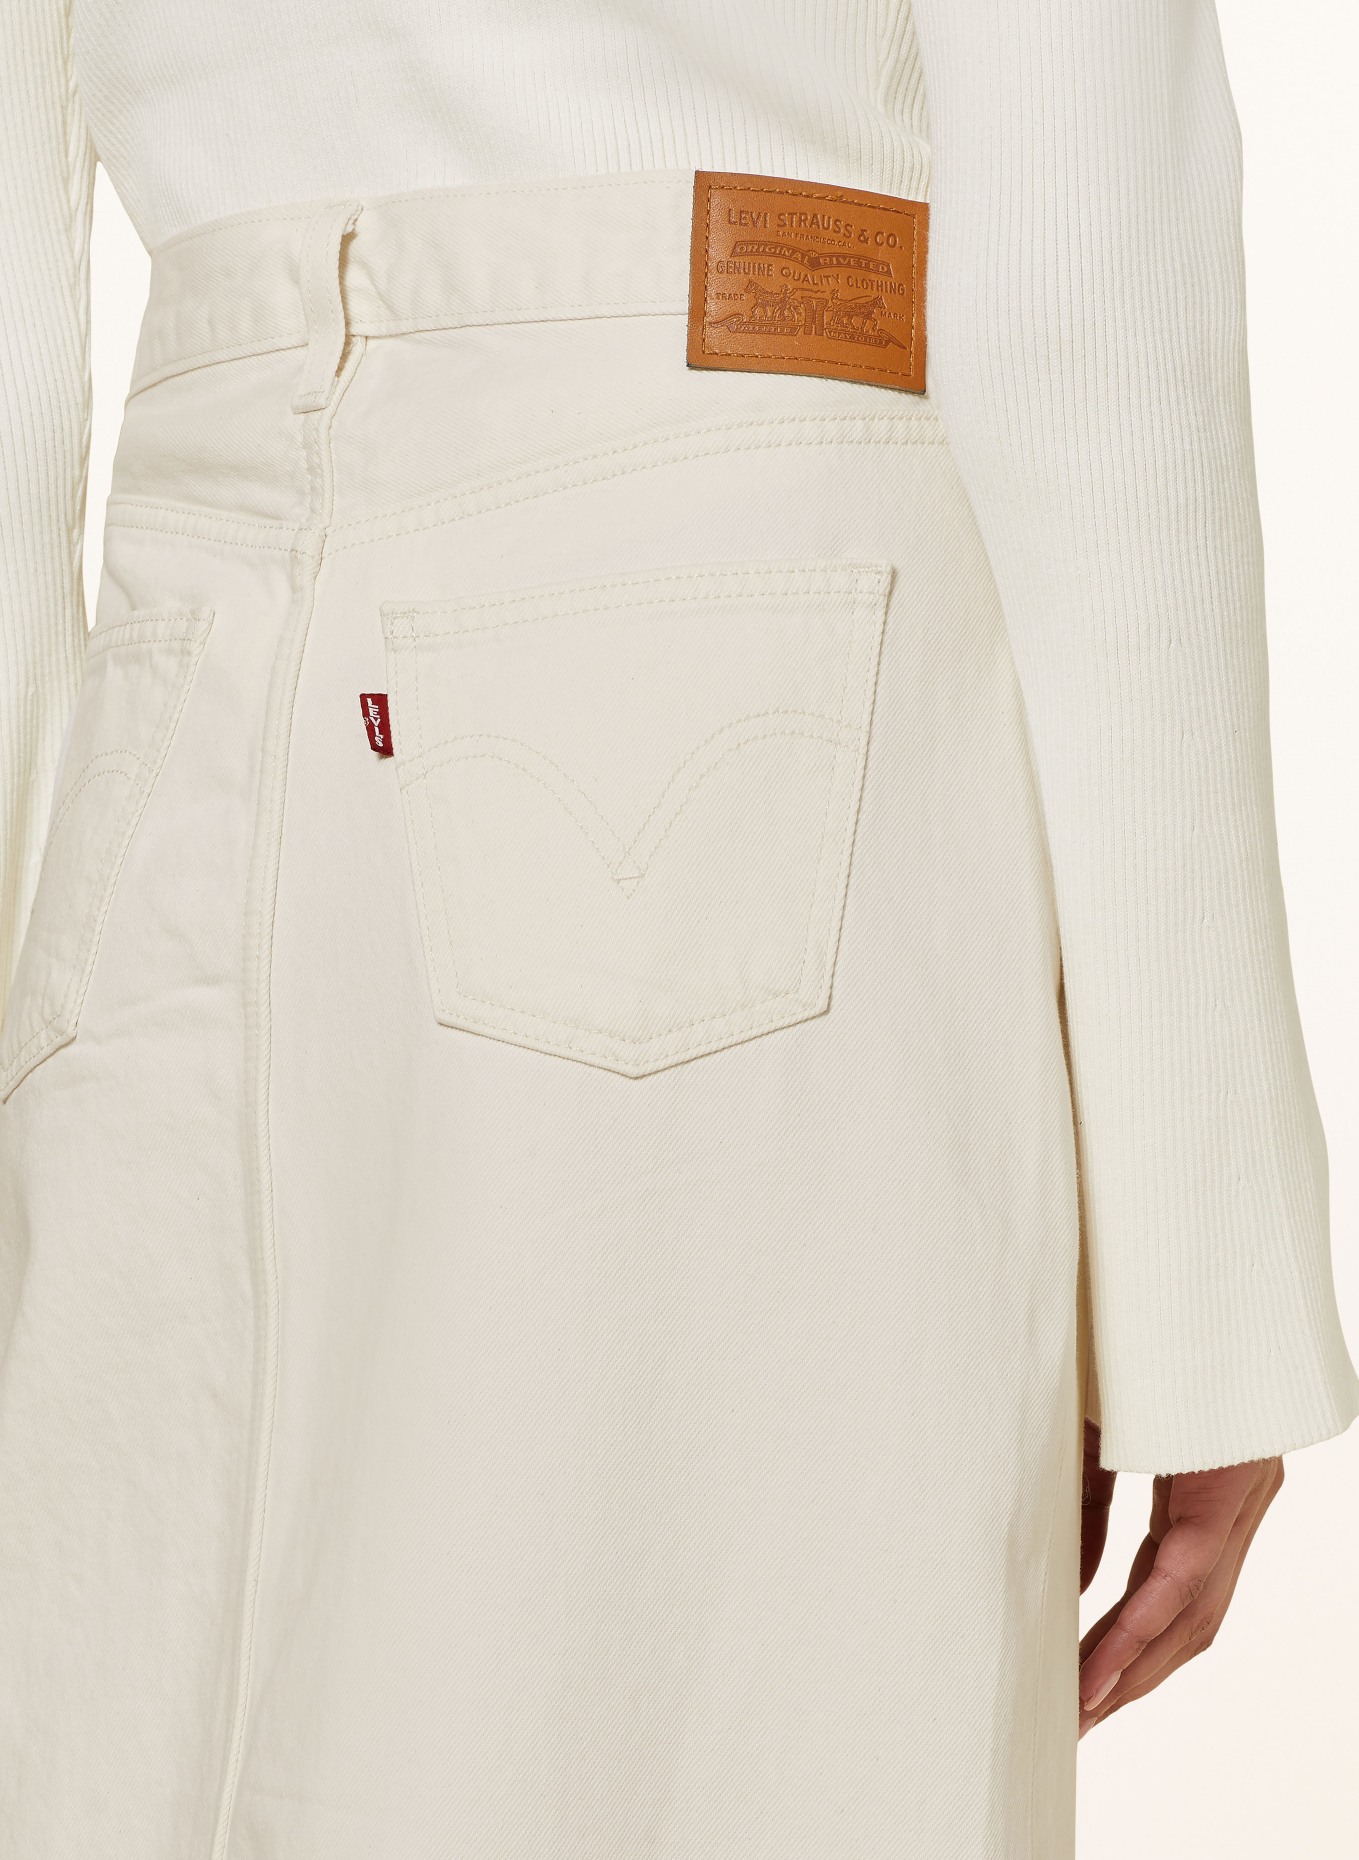 Levi's® Denim skirt, Color: 02 Neutrals (Image 4)